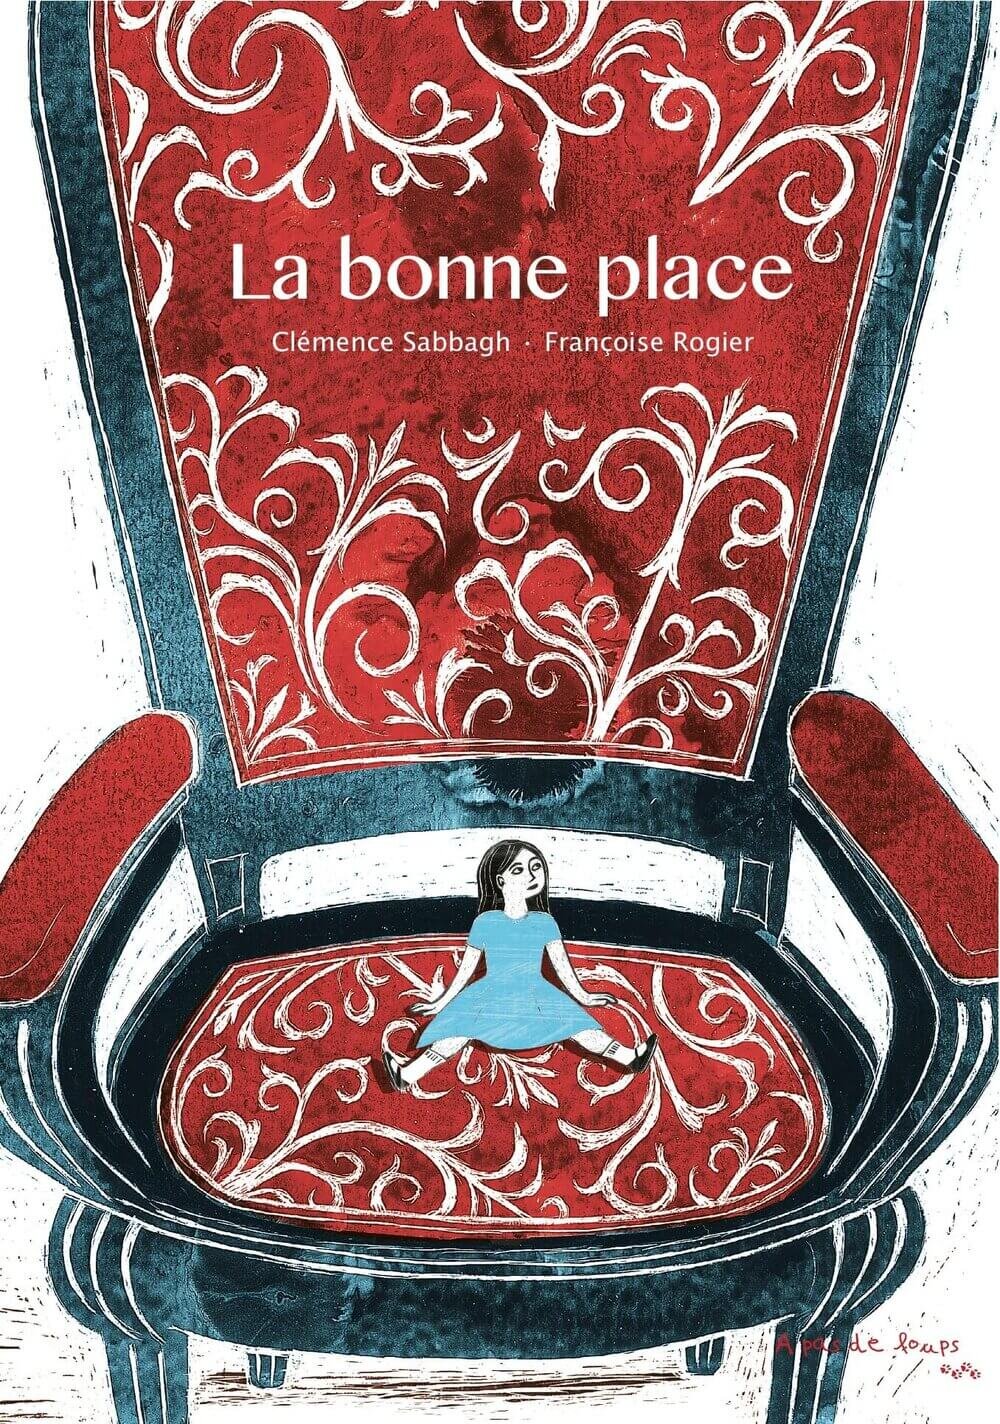 La+bonne+place+-+Couverture+-+Clémence+Sabbagh+et+Françoise+Rogier.jpg